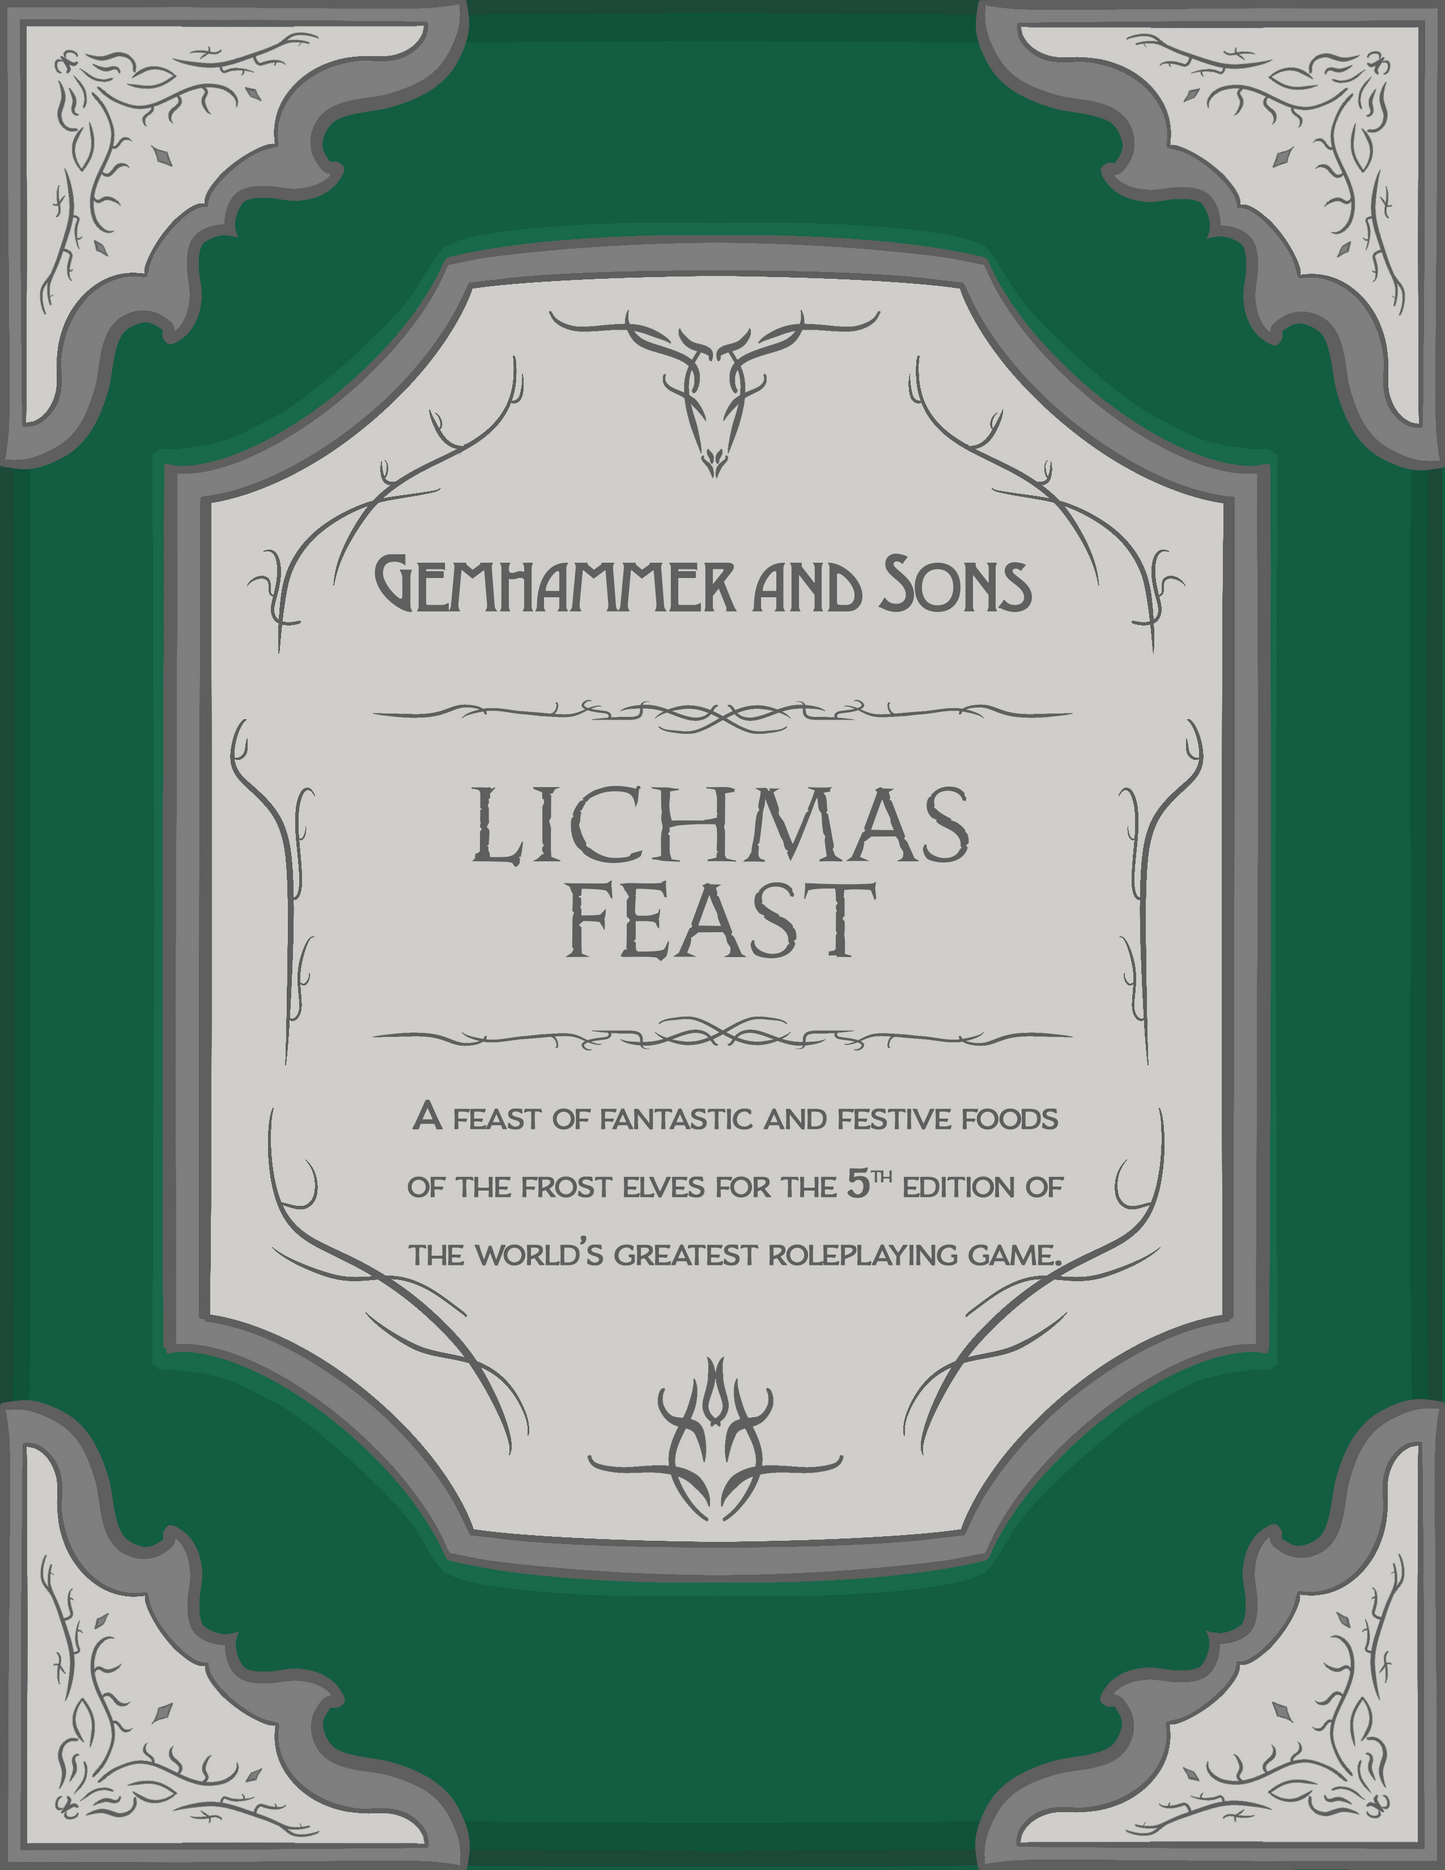 Lichmas Feast